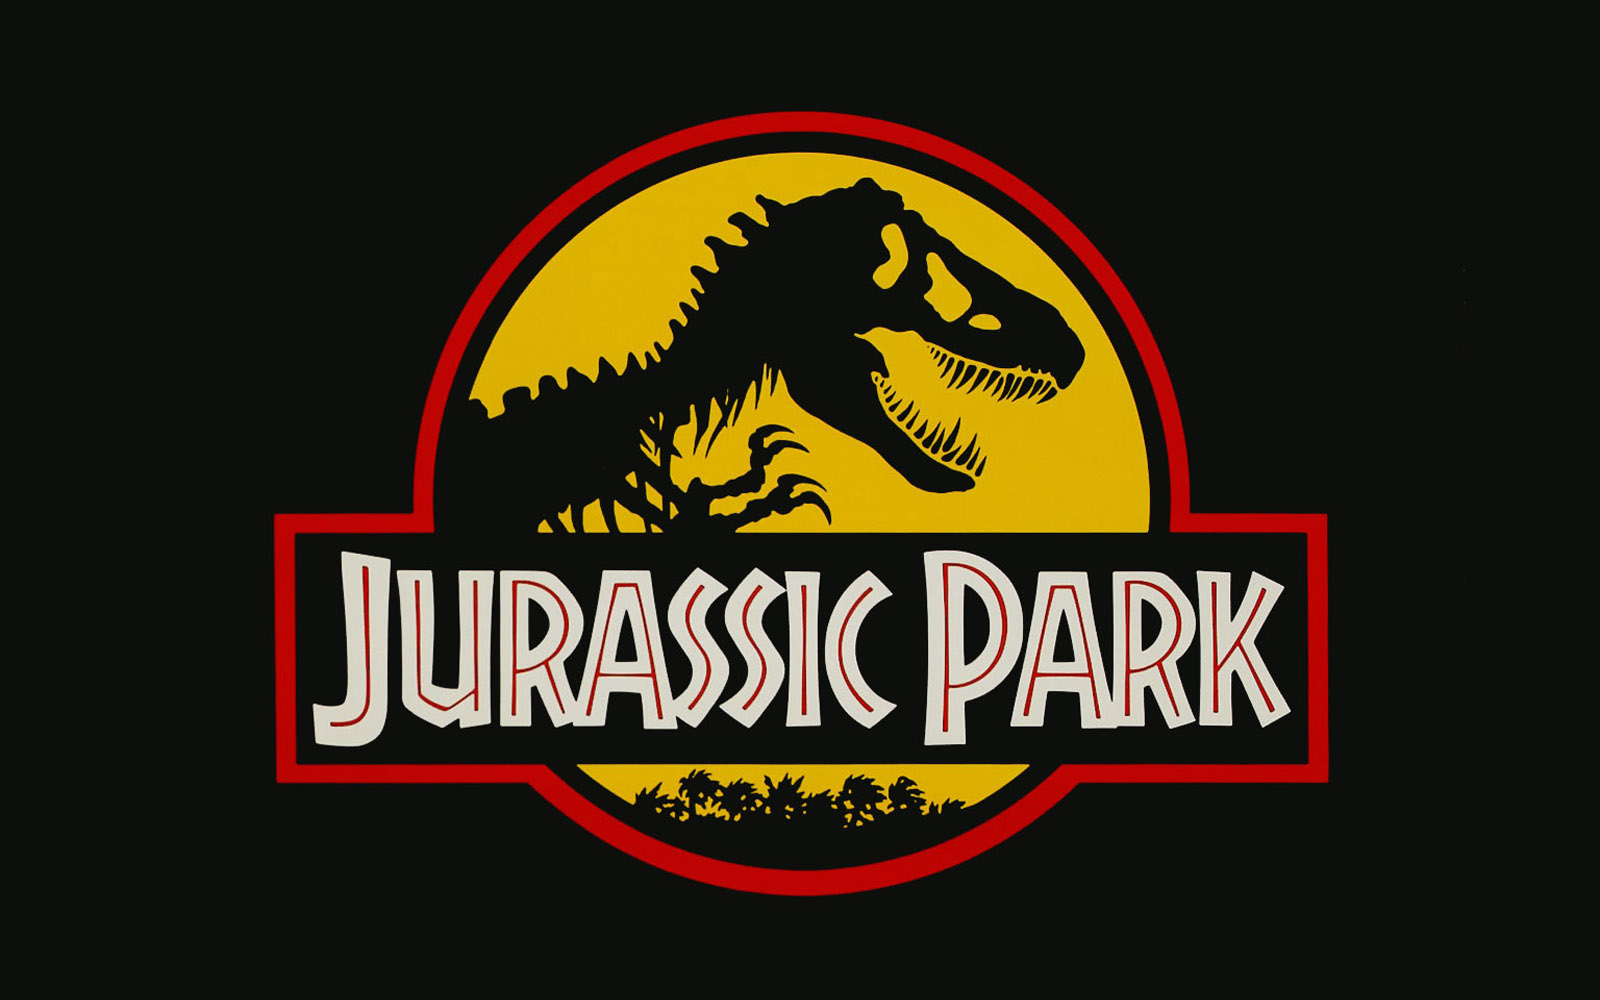 Jurassic Park Logo - Park Pedia - Jurassic Park, Dinosaurs, Stephen Spielberg